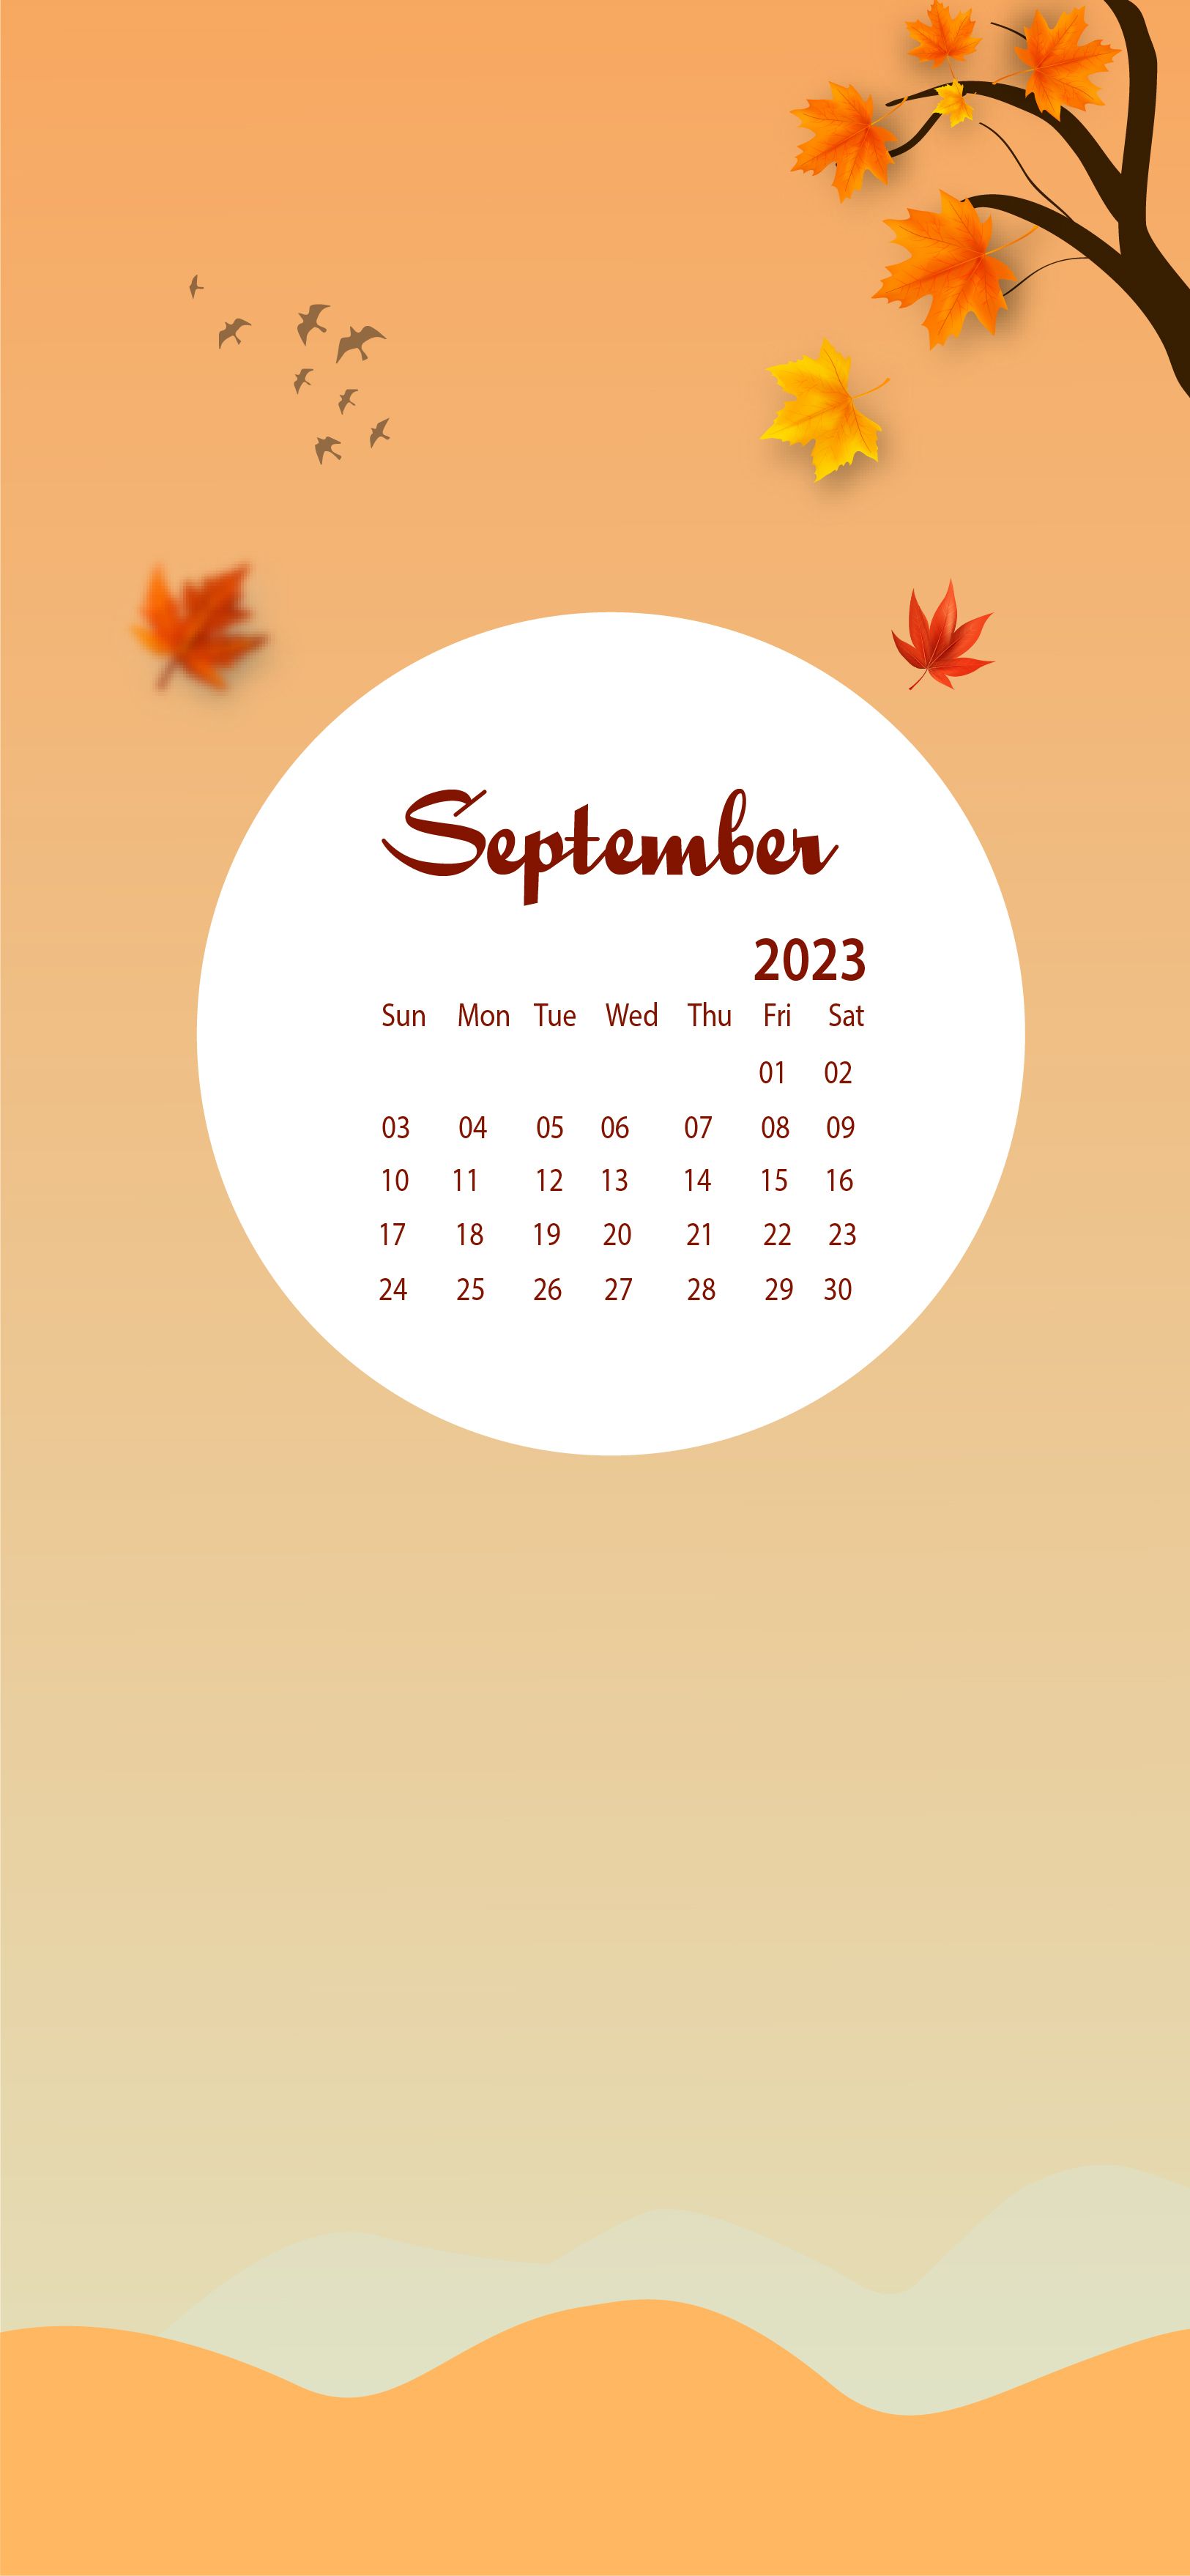  2023 Kalender Hintergrundbild 1625x3517. September 2023 Desktop Wallpaper Calendar